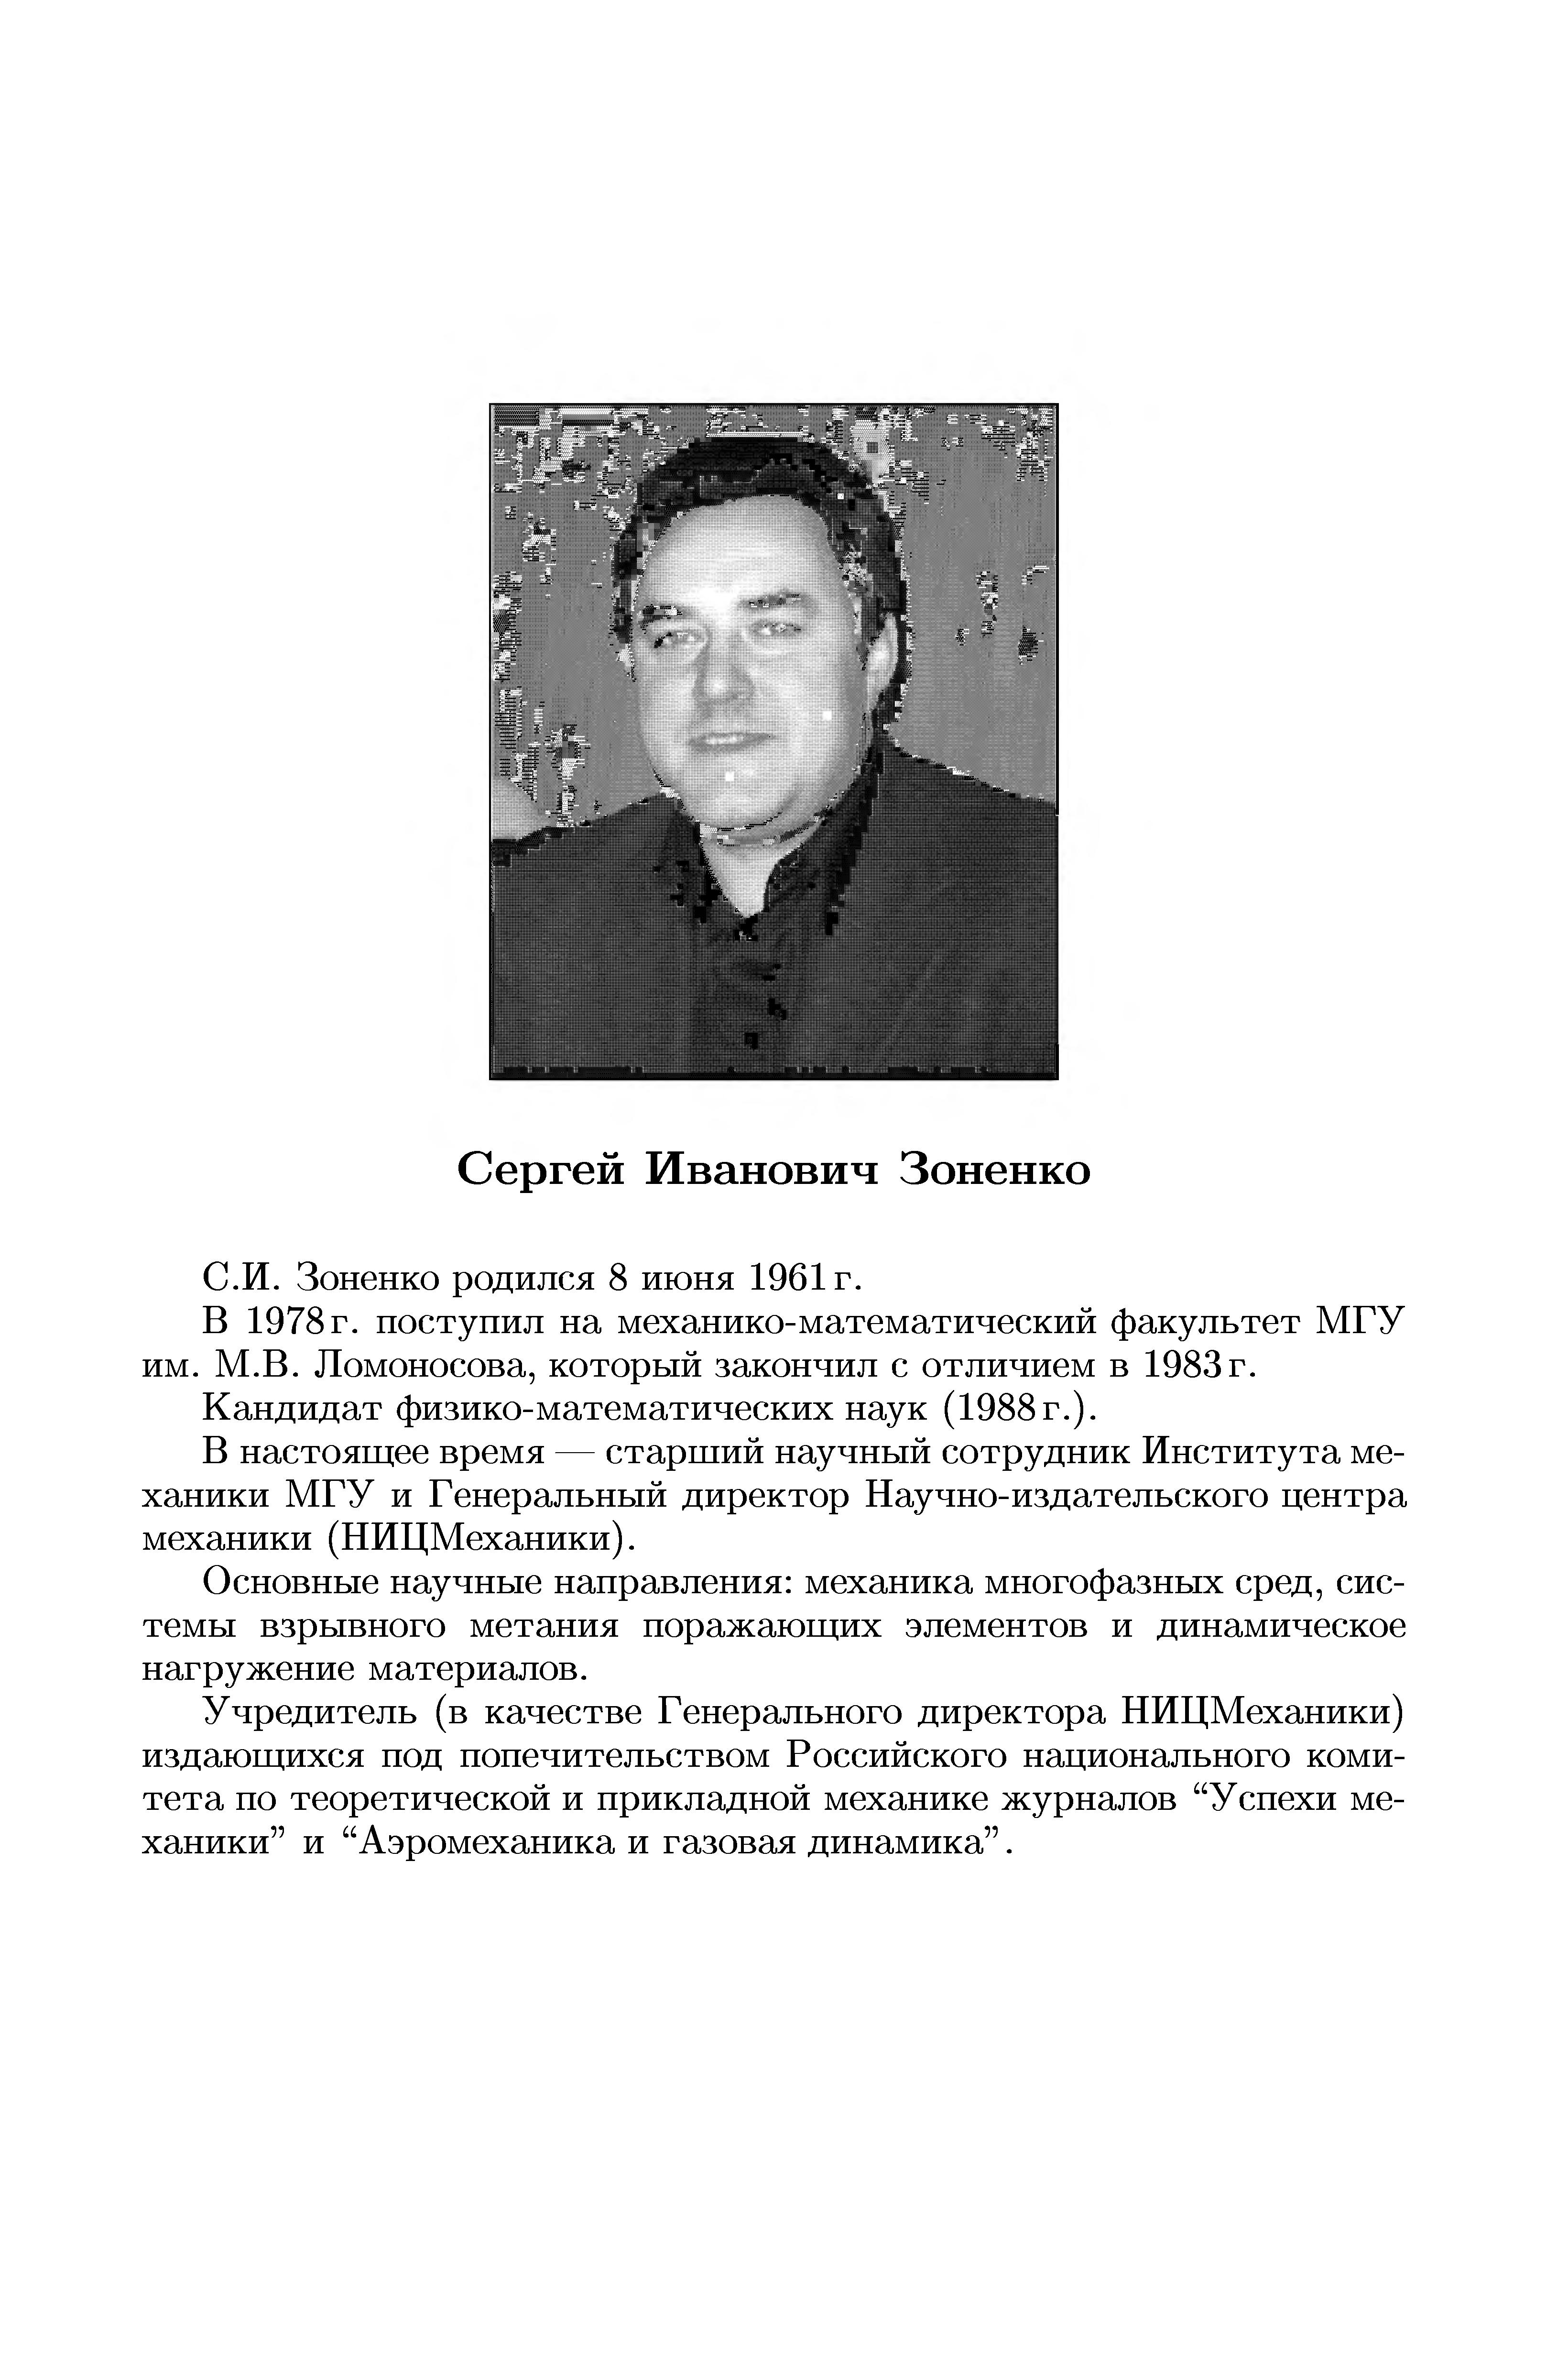 В 1978 г. поступил на механико-математический факультет МГУ им. М.В. Ломоносова, который закончил с отличием в 1983г.
